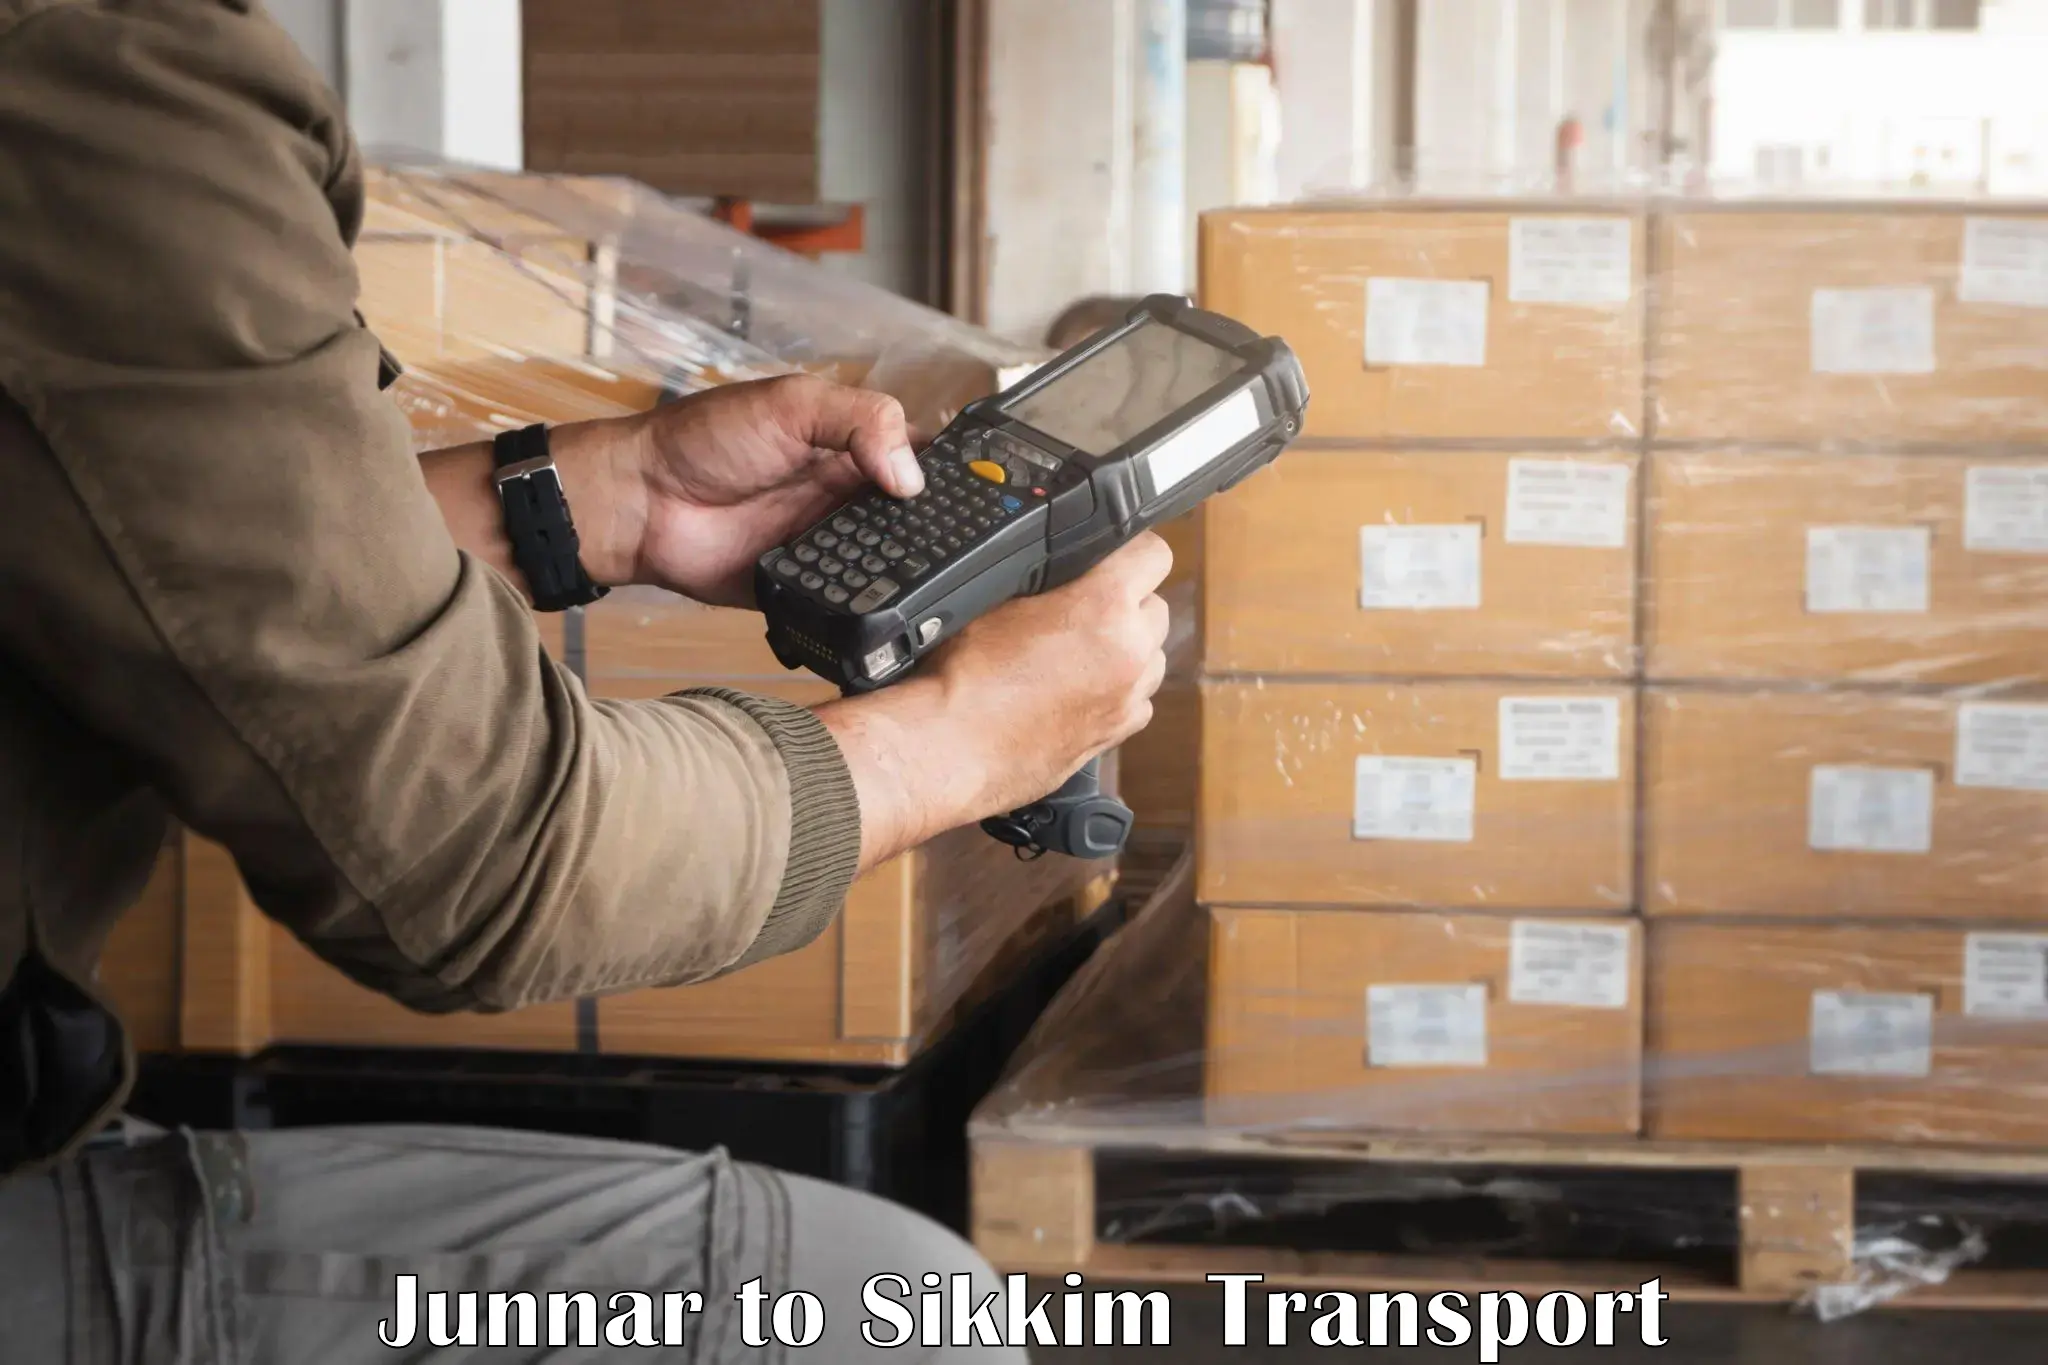 Nearest transport service Junnar to Sikkim